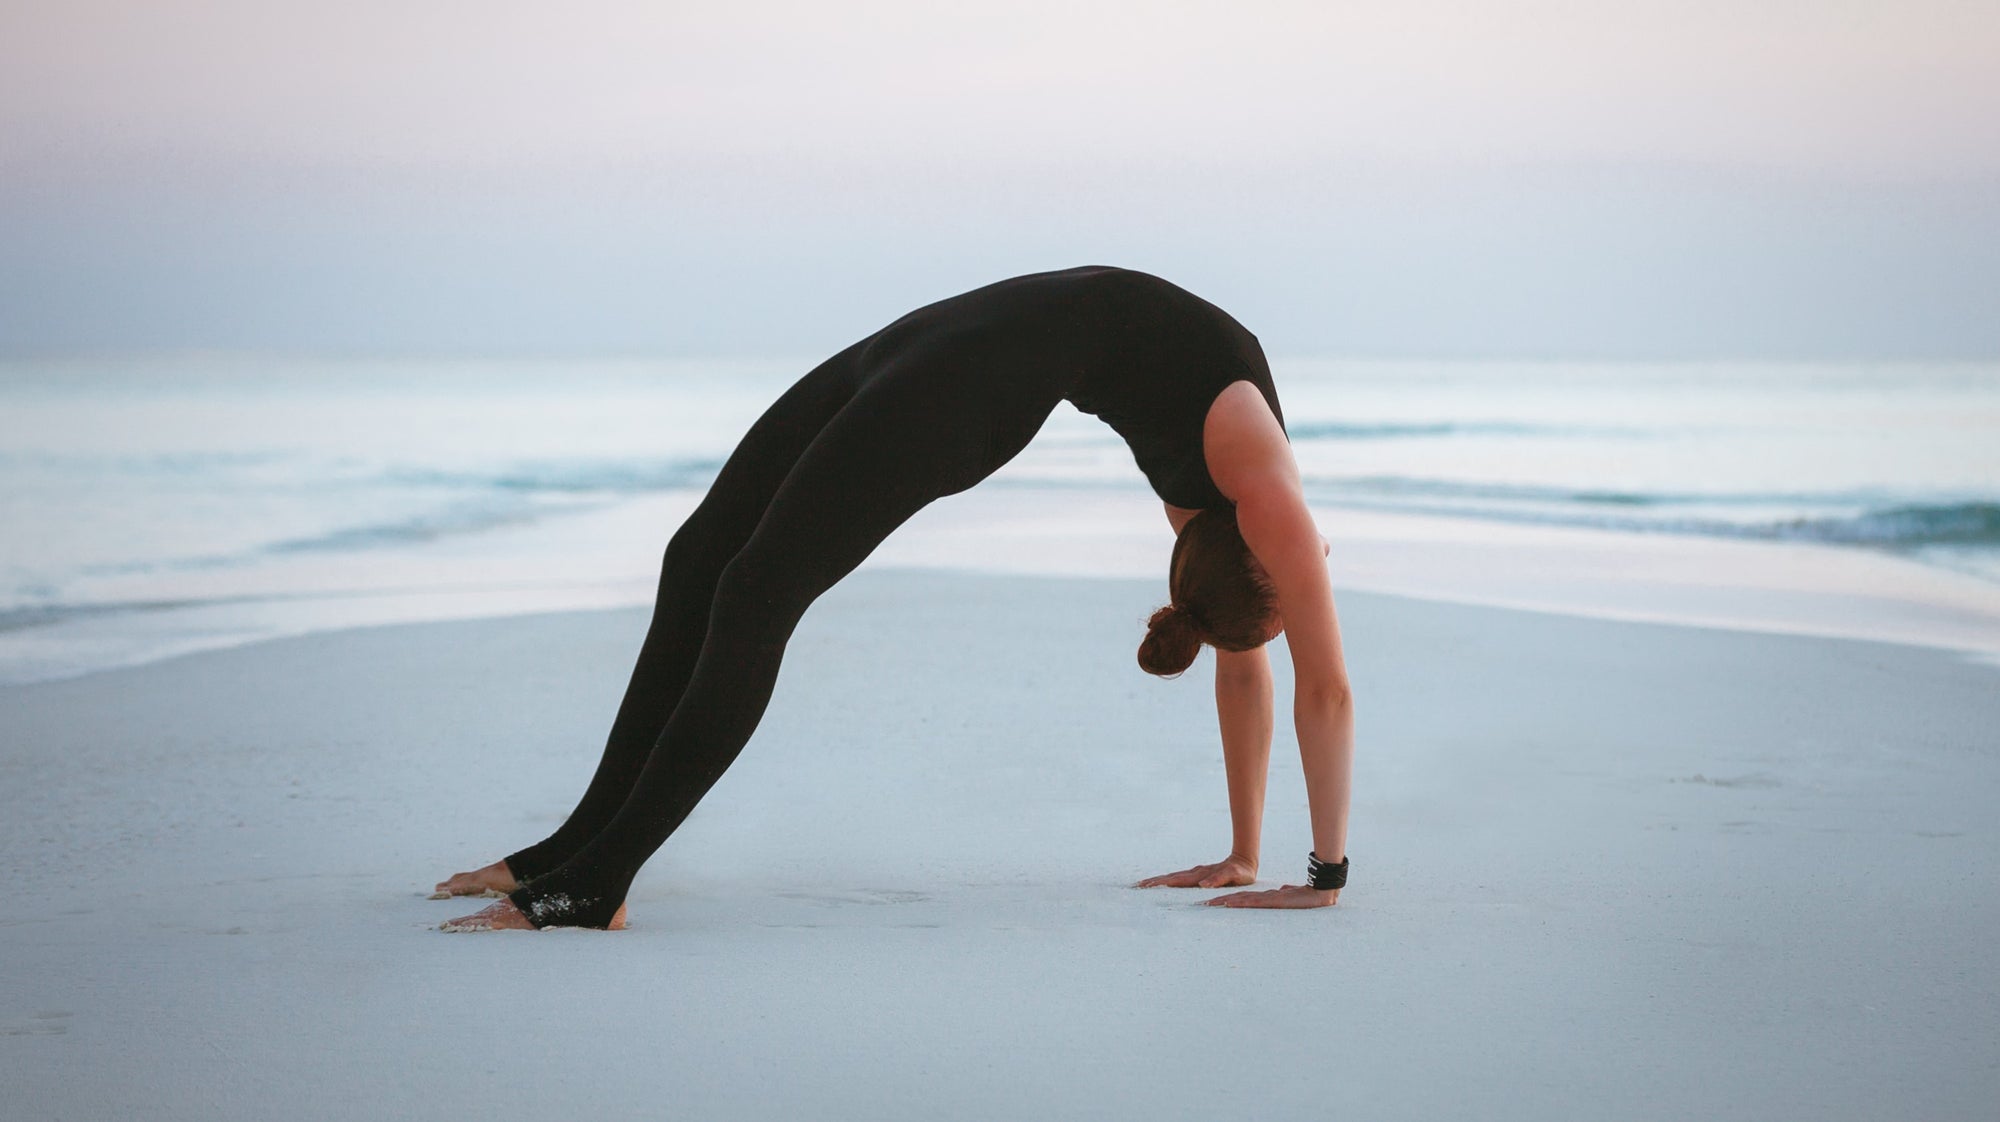 Urdhva Danurasana - the upward bow yoga pose